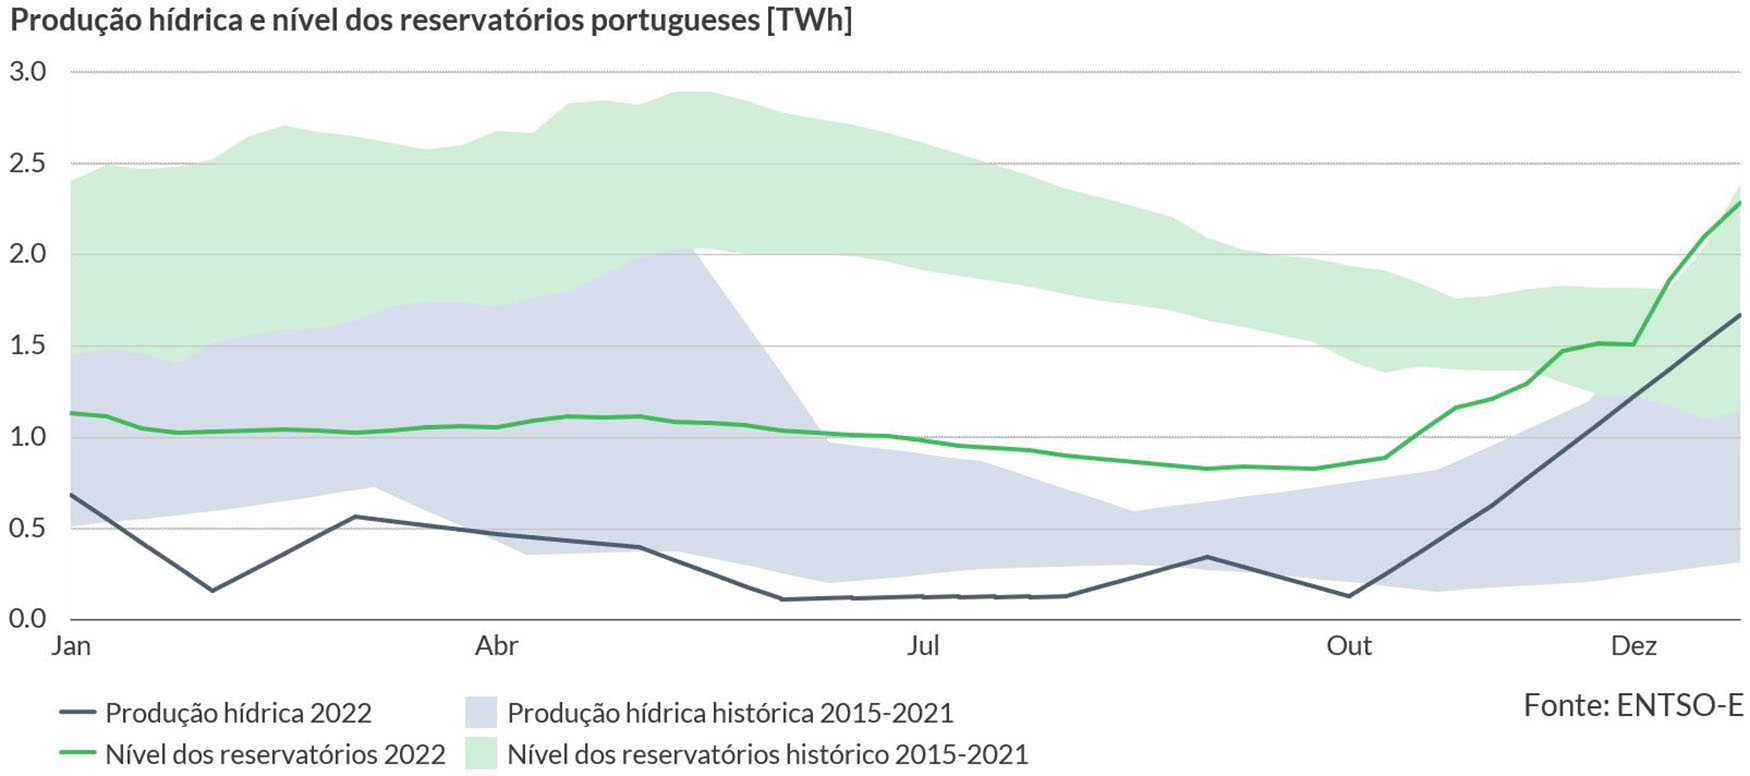 Figura 2  Produo hdrica e nvel dos reservatrios portugueses mensalmente (2015-2022). Fonte: ENTSO-E